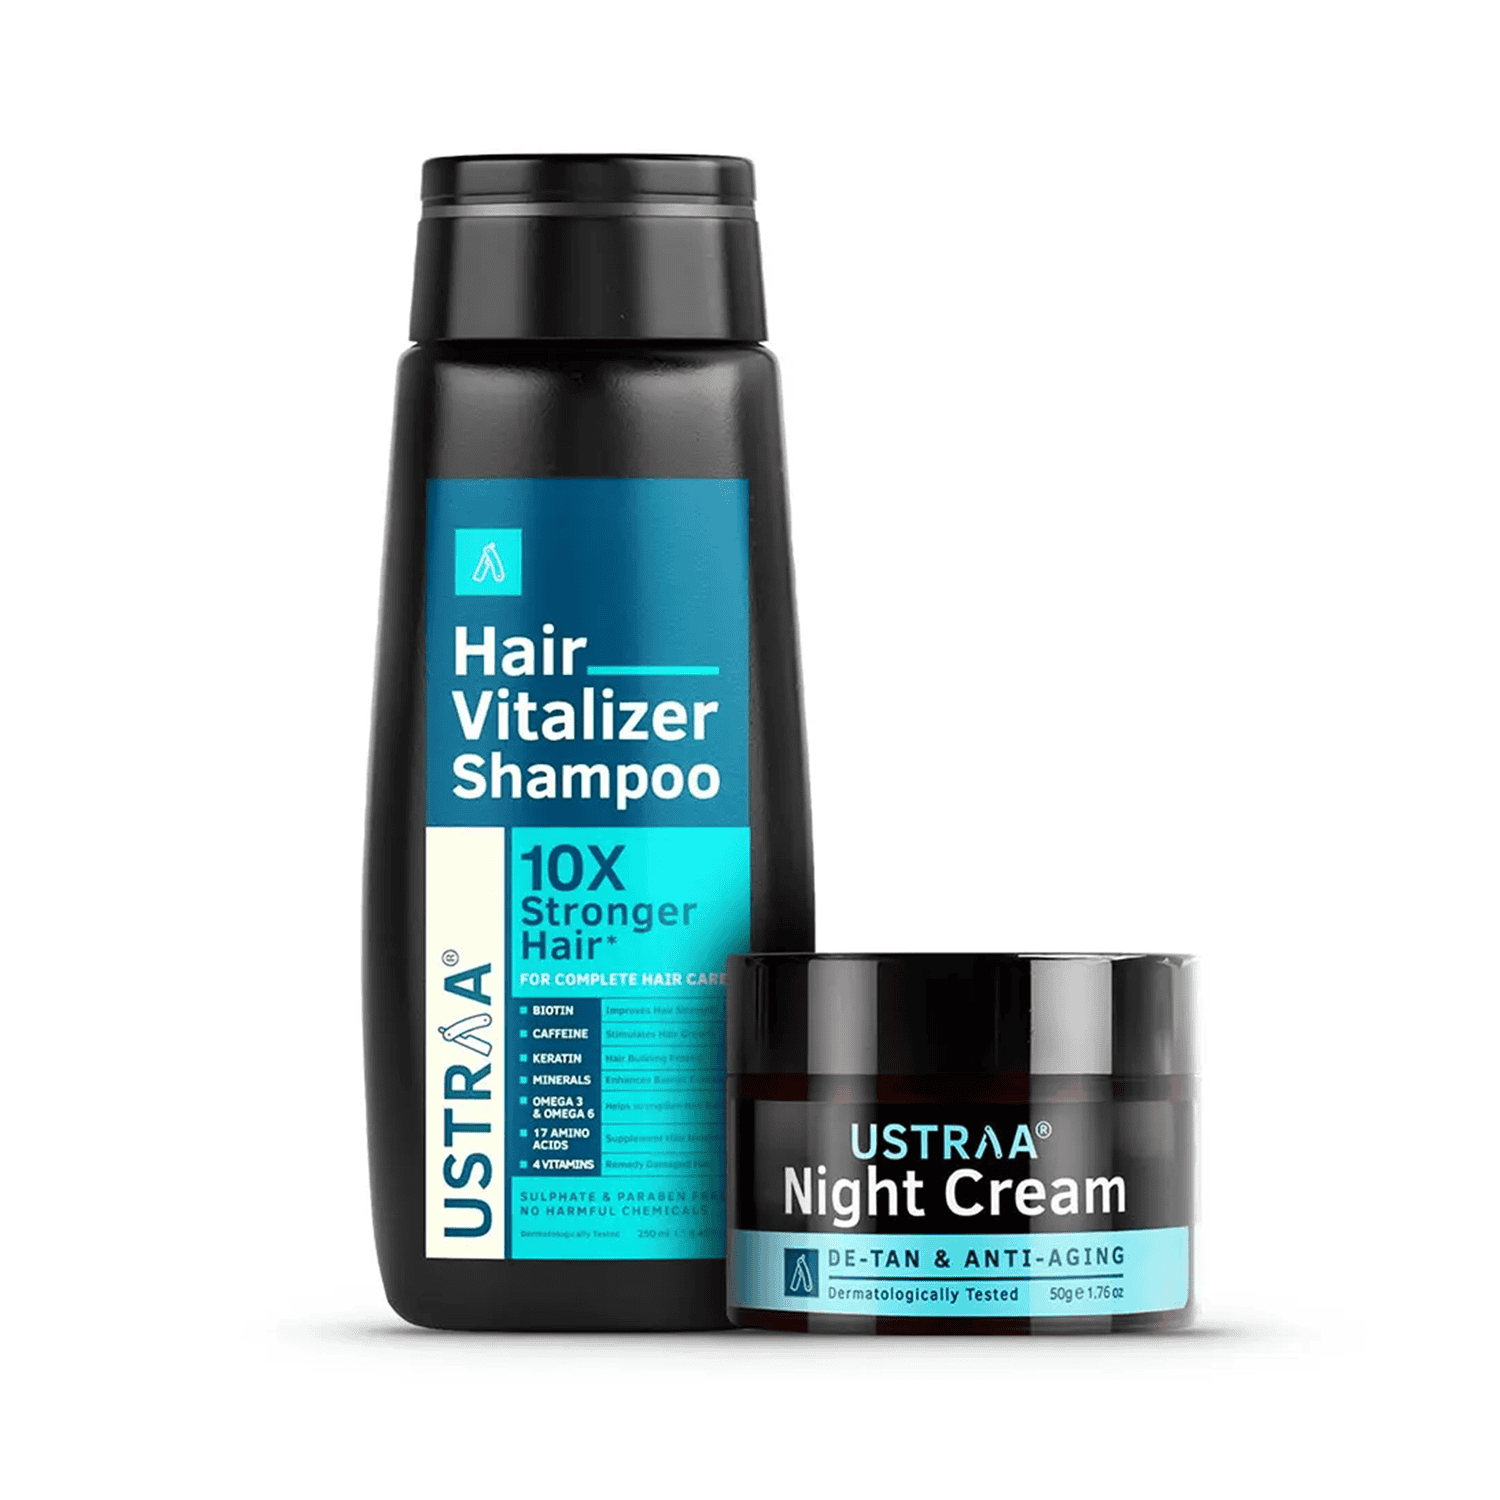 Ustraa | Ustraa Hair Vitalizer Shampoo & Night Cream Combo